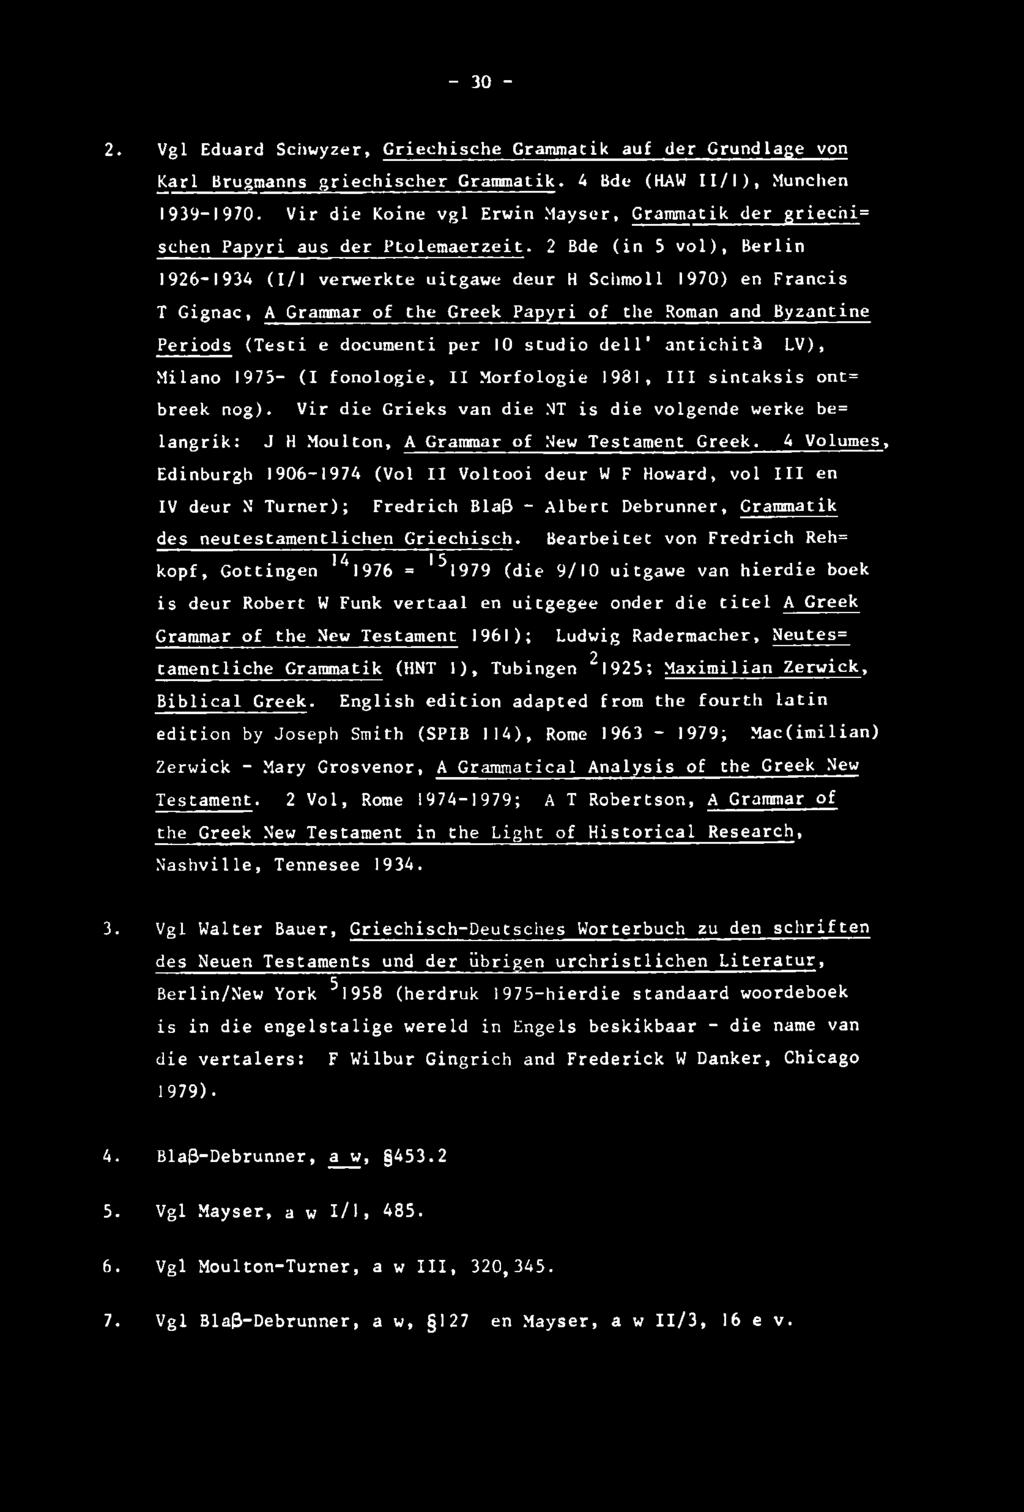 - 30-2. Vgl Eduard Schwyzer, Griechische Crammatik auf der Grundlage von Karl Brugmanns griechischer Crammatik. 4 Bde (HAW I I/I), Munchen 1939-1970.